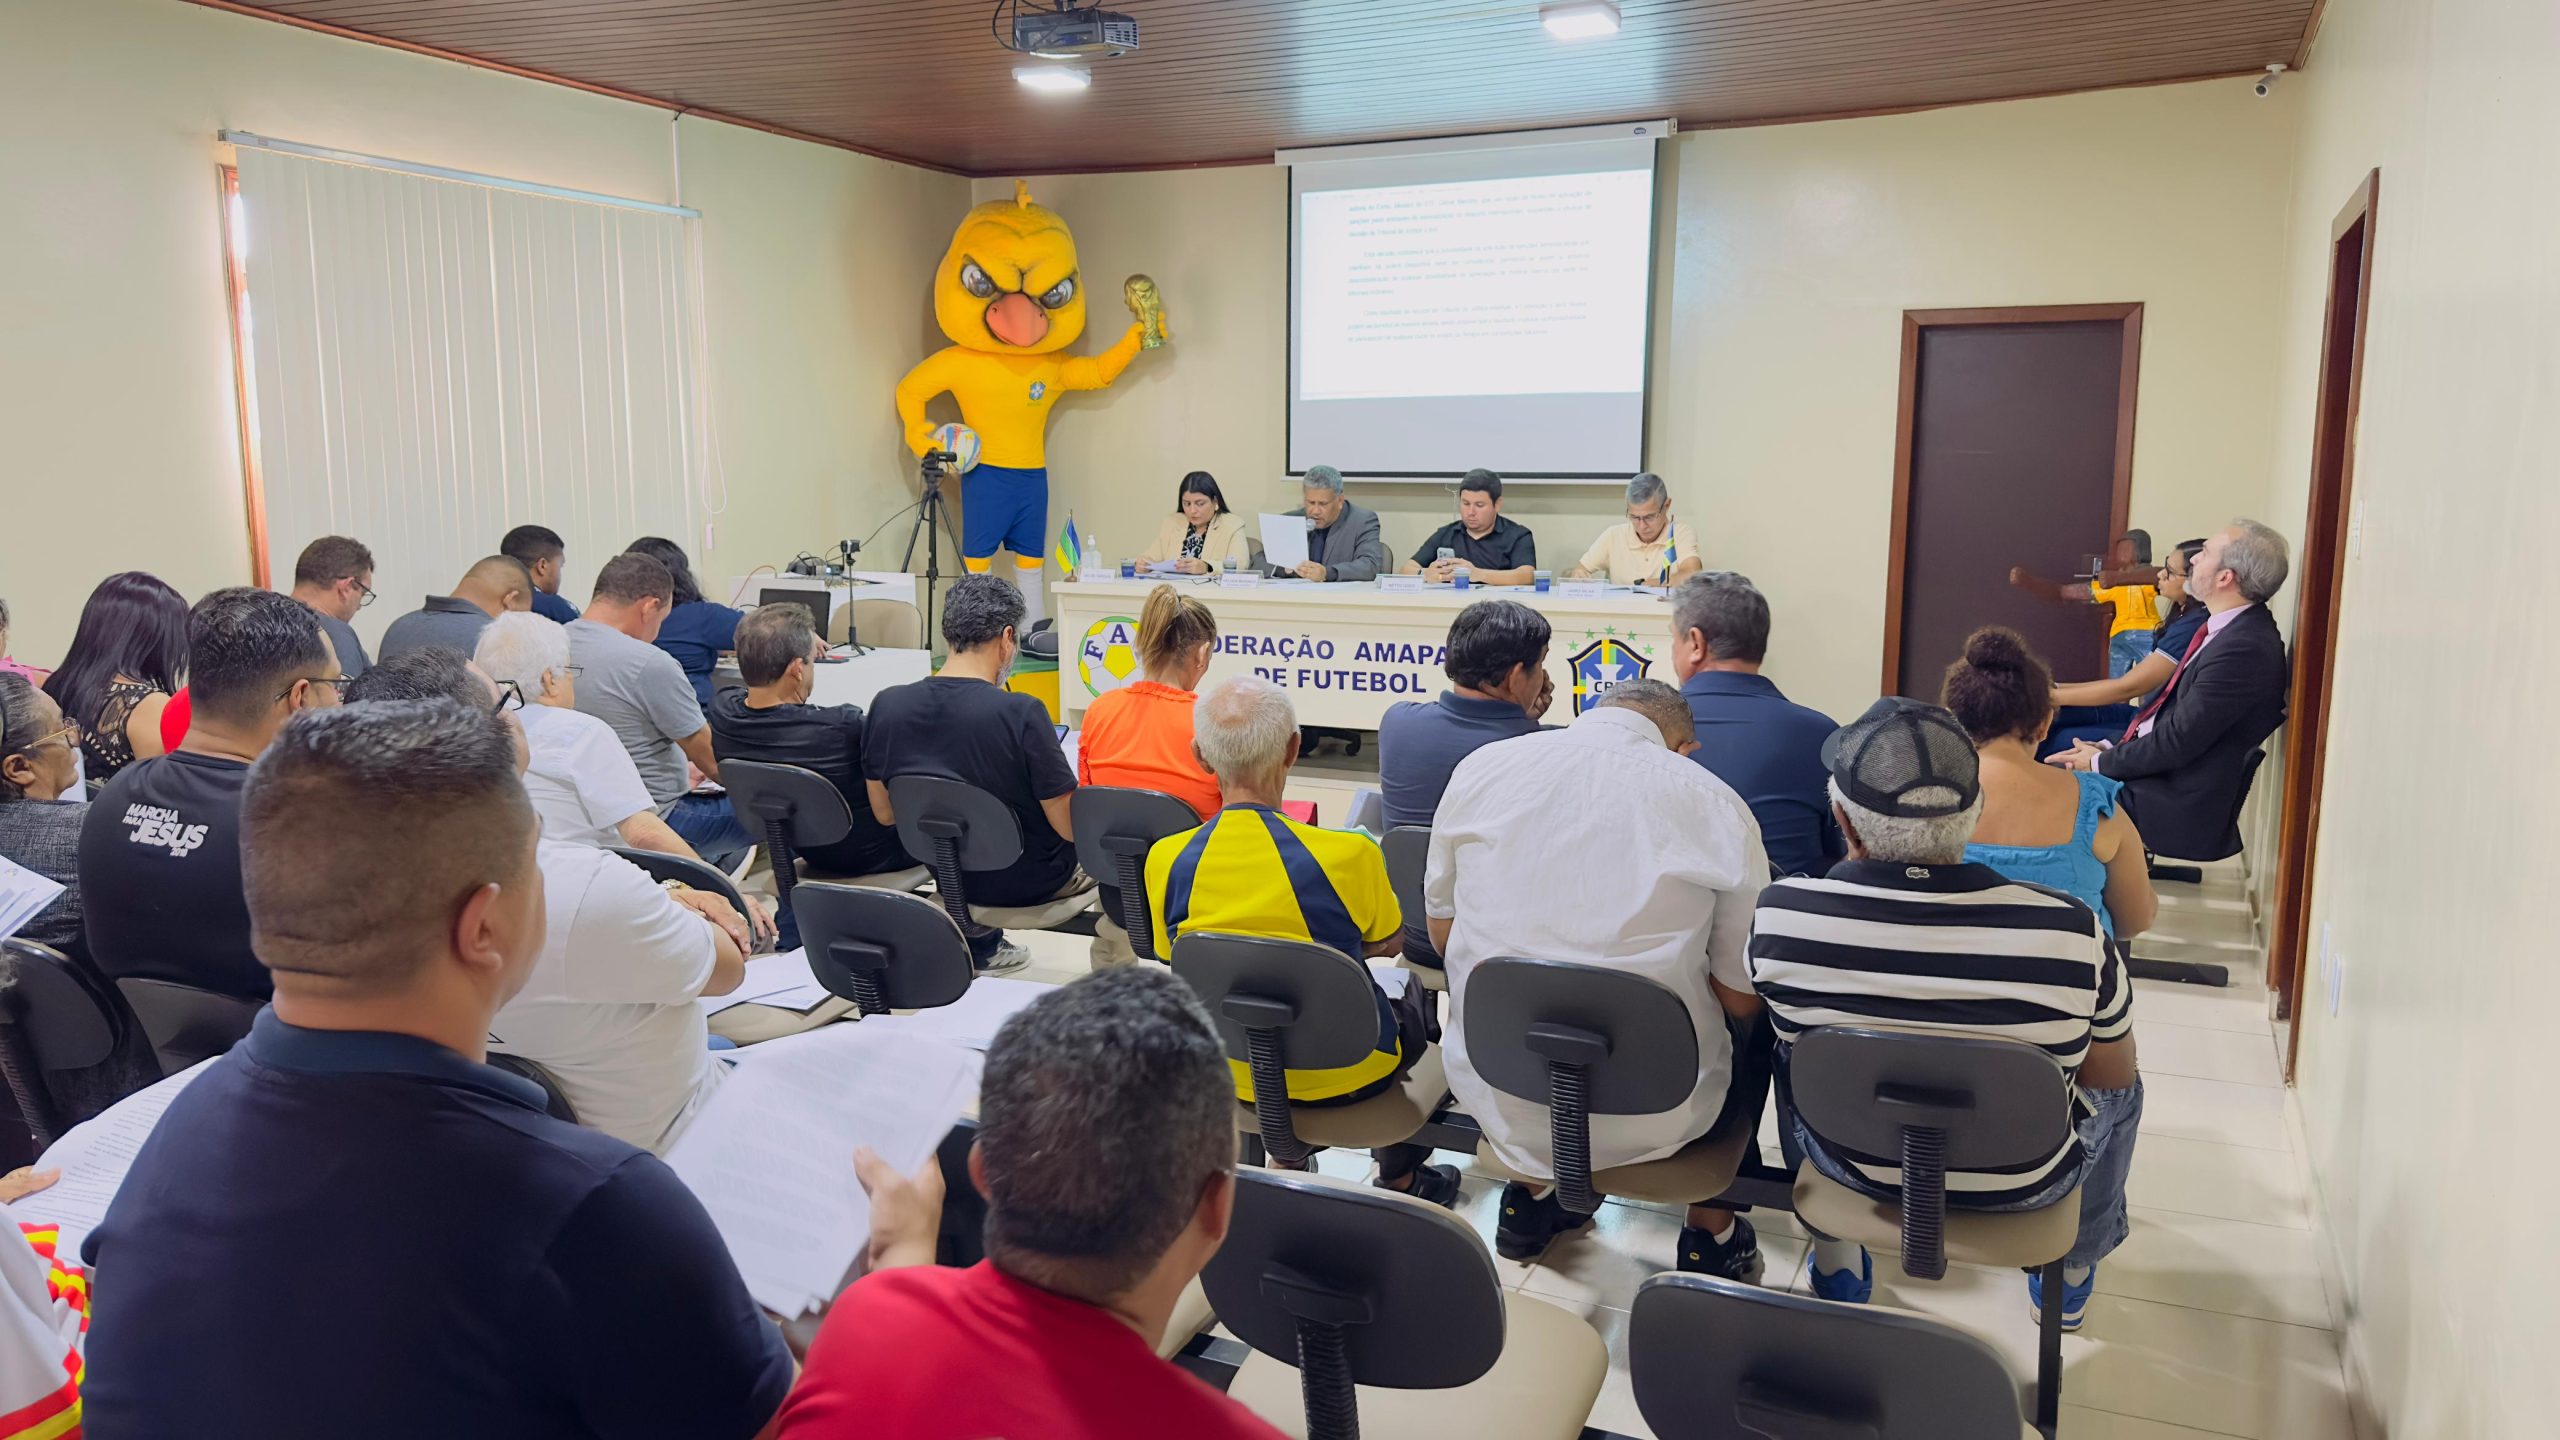 Federação Amapaense de Futebol em reunião no Amapá (Foto: Divulgação Site Oficial da Federação Amapaense de Futebol)